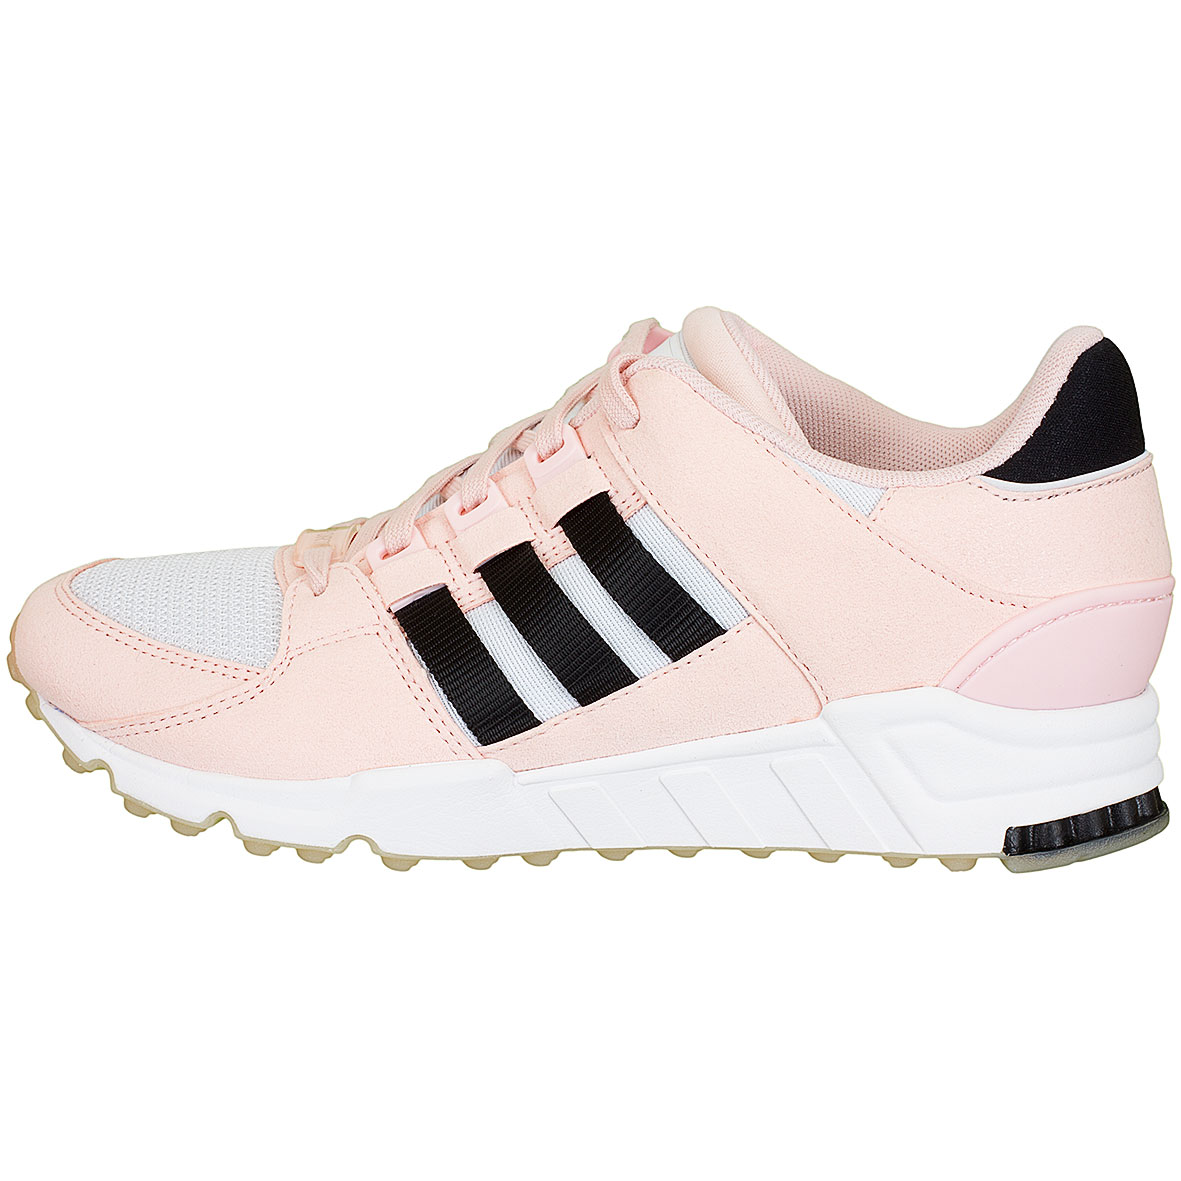 ☆ Adidas Originals Damen Sneaker Equipment Support RF pink/schwarz/weiß -  hier bestellen!